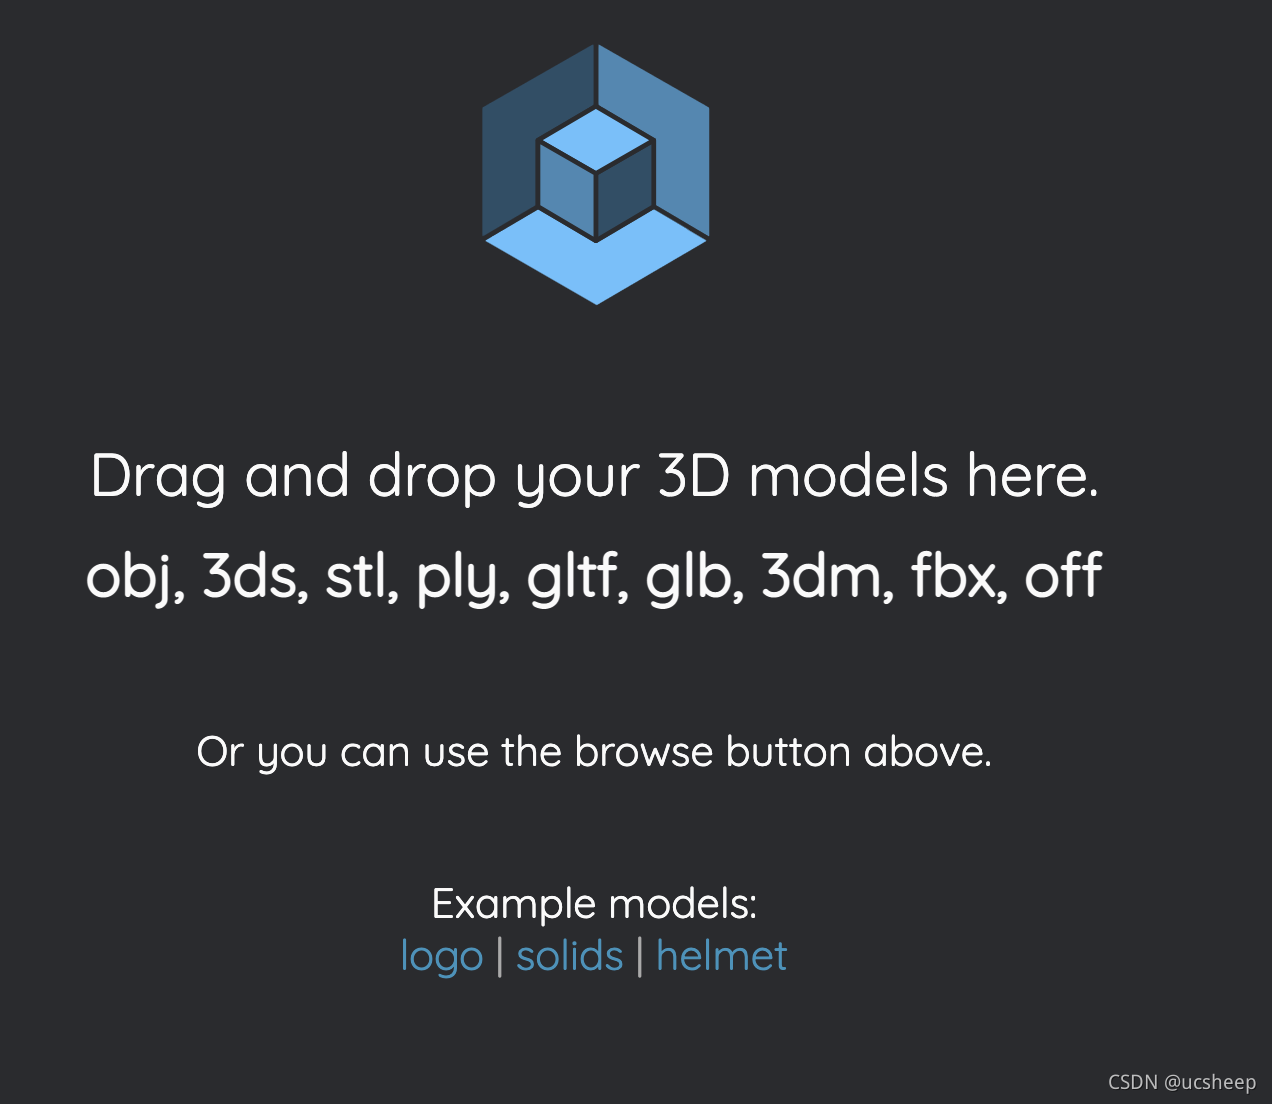 在你的网站、浏览器中集成3D模型预览功能，使用开源项目Online3DViewer